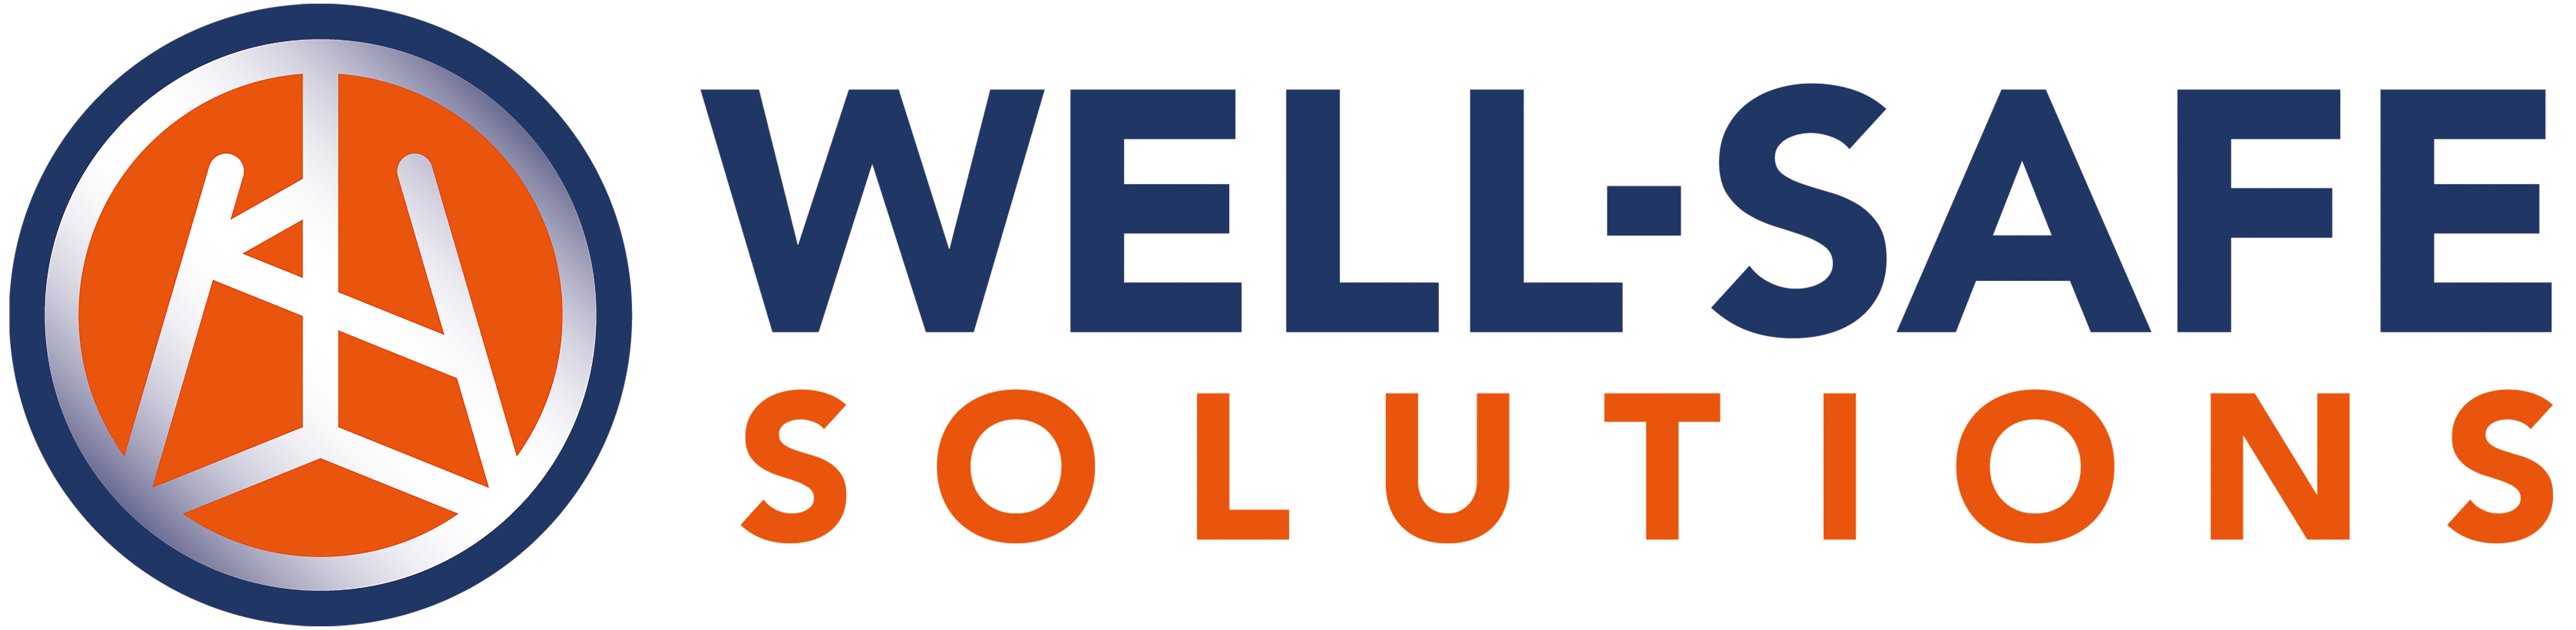 Well-Safe Solutions default logo (Hi res, CYMK file) (2)